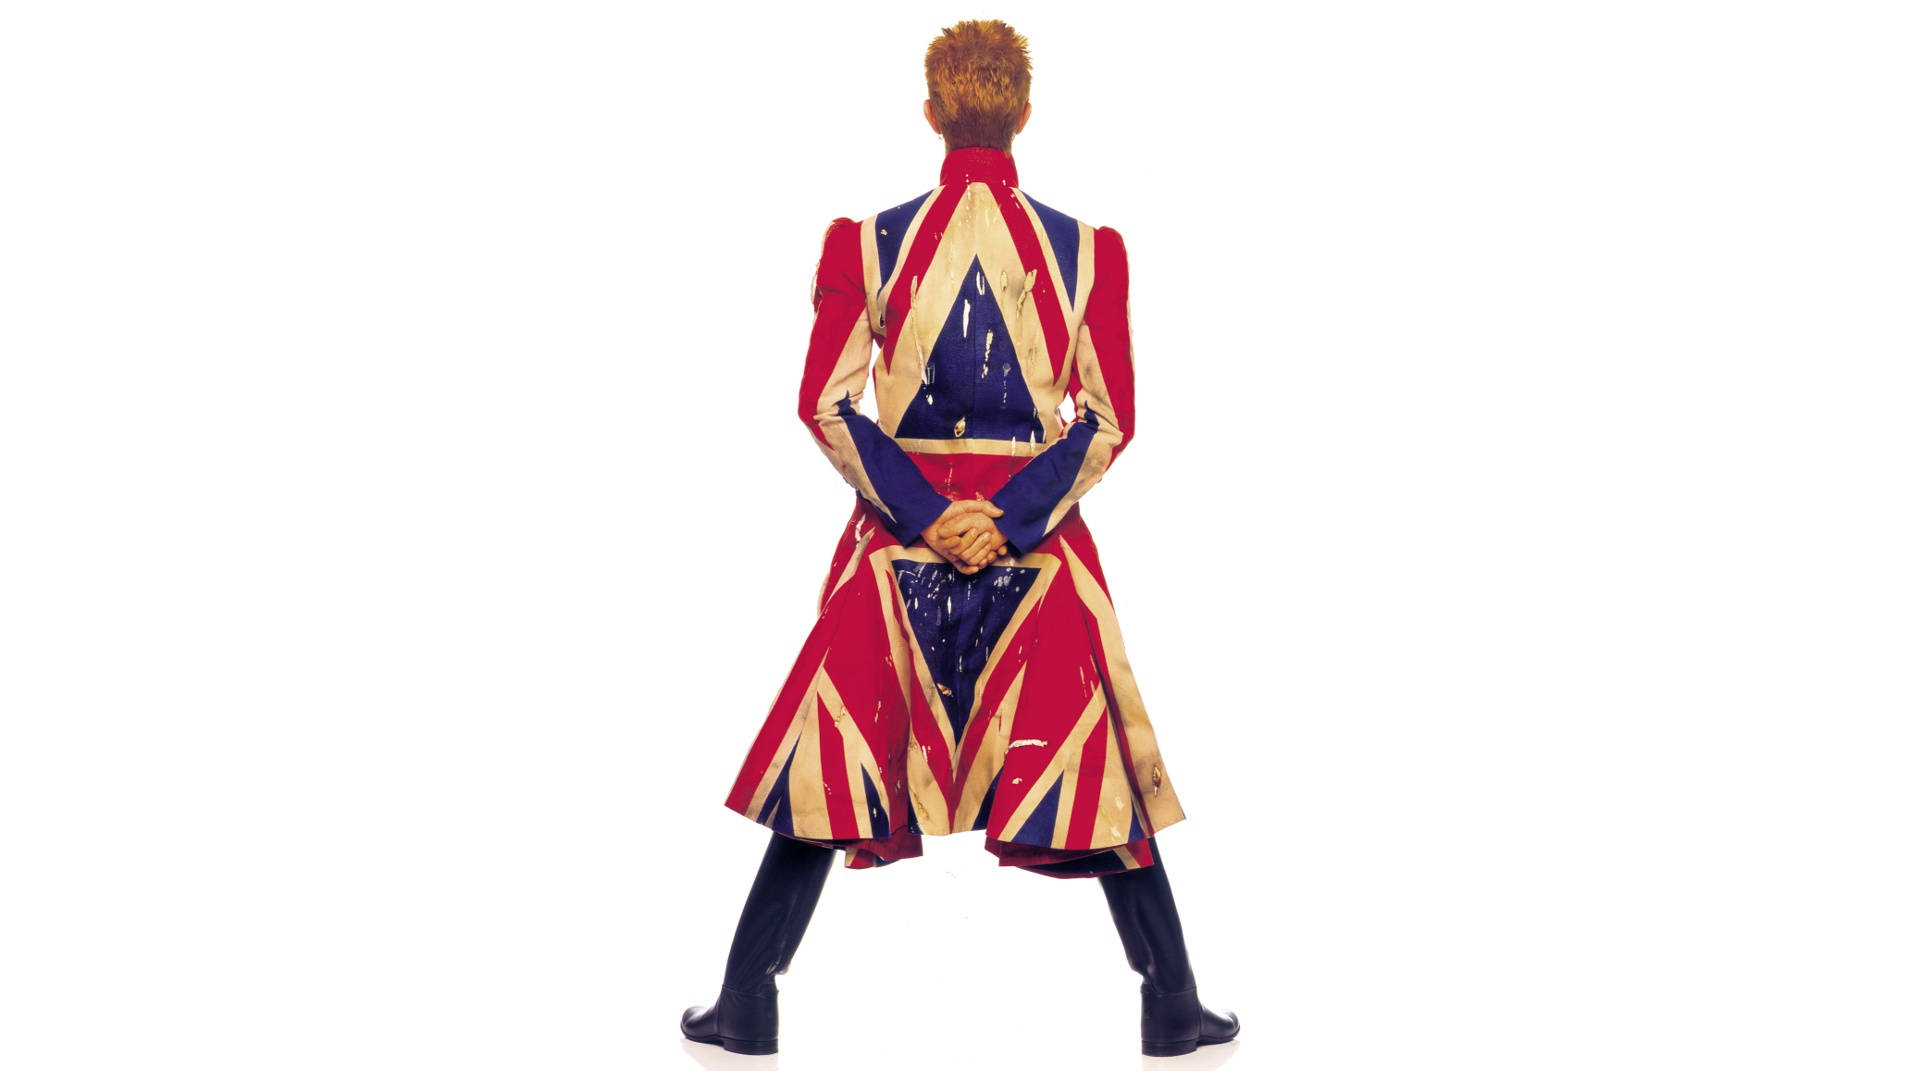 David Bowie Union Jack Coat